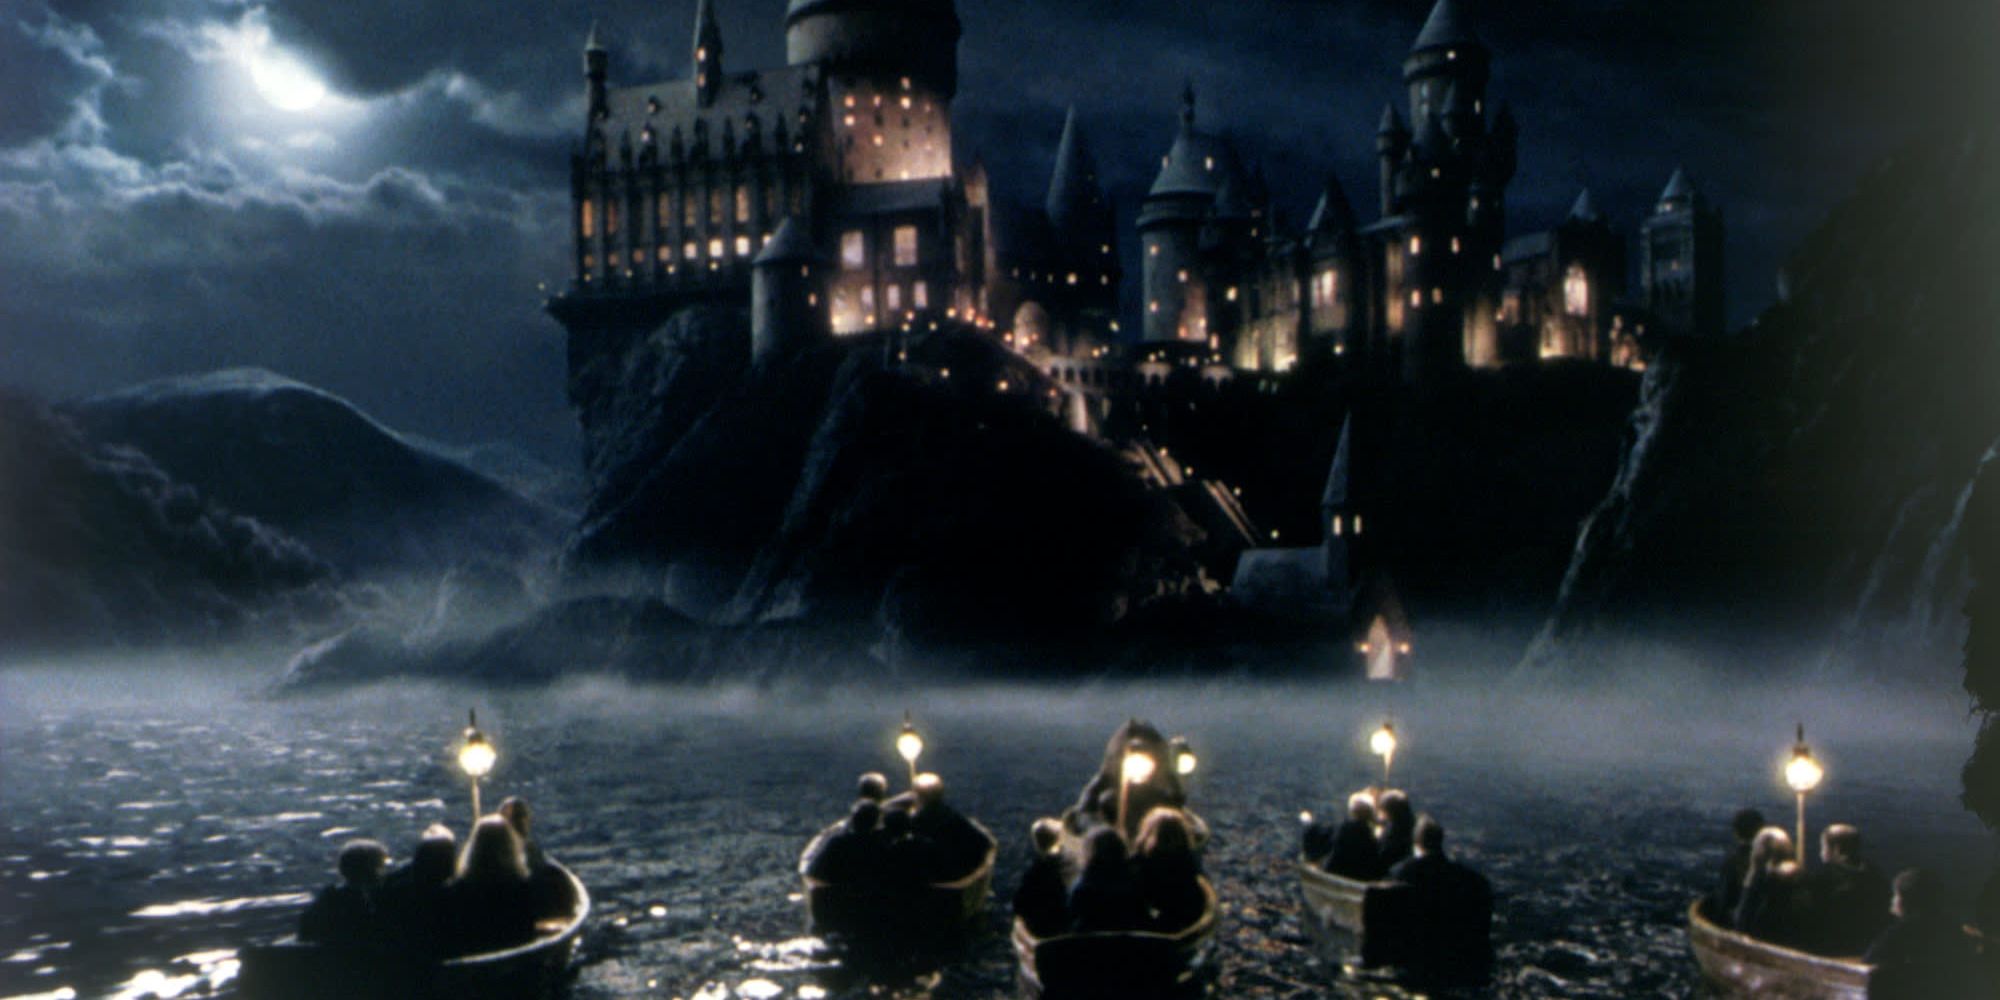 Os navios que chegaram a Hogwarts foram Harry Potter e a Pedra Filosofal